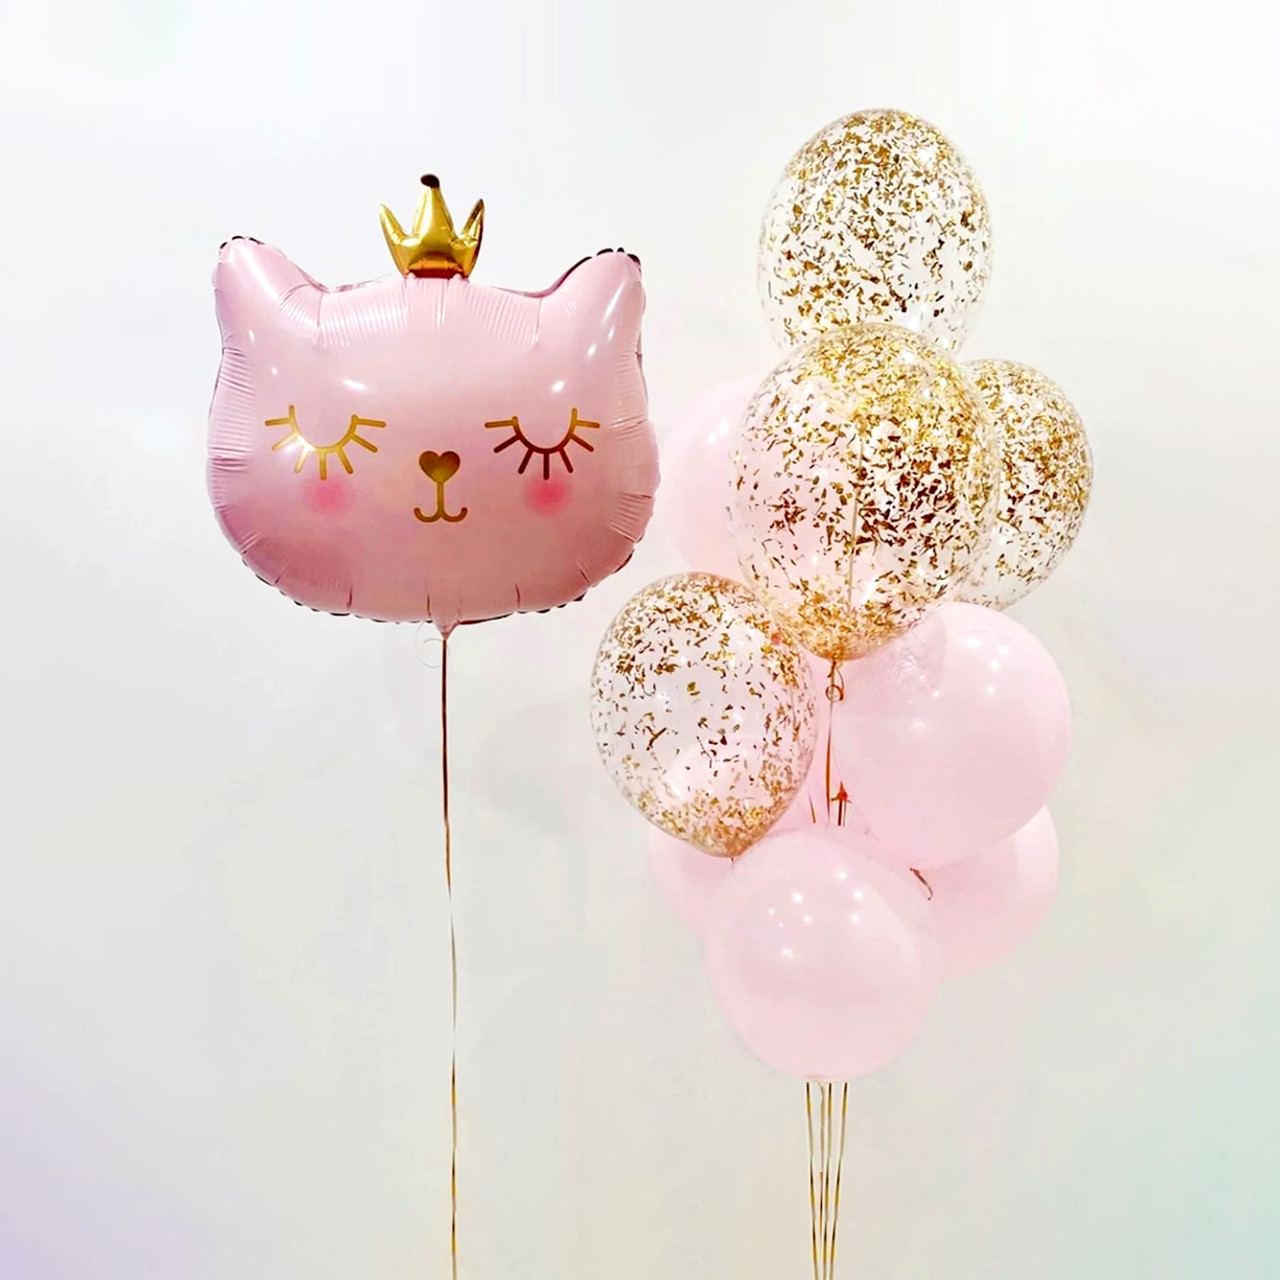 Повітряні гелієві кульки фольгована фігура кулька Кішечка Принцеса з гелієм Подарунок для дівчинки дівчини на день народження